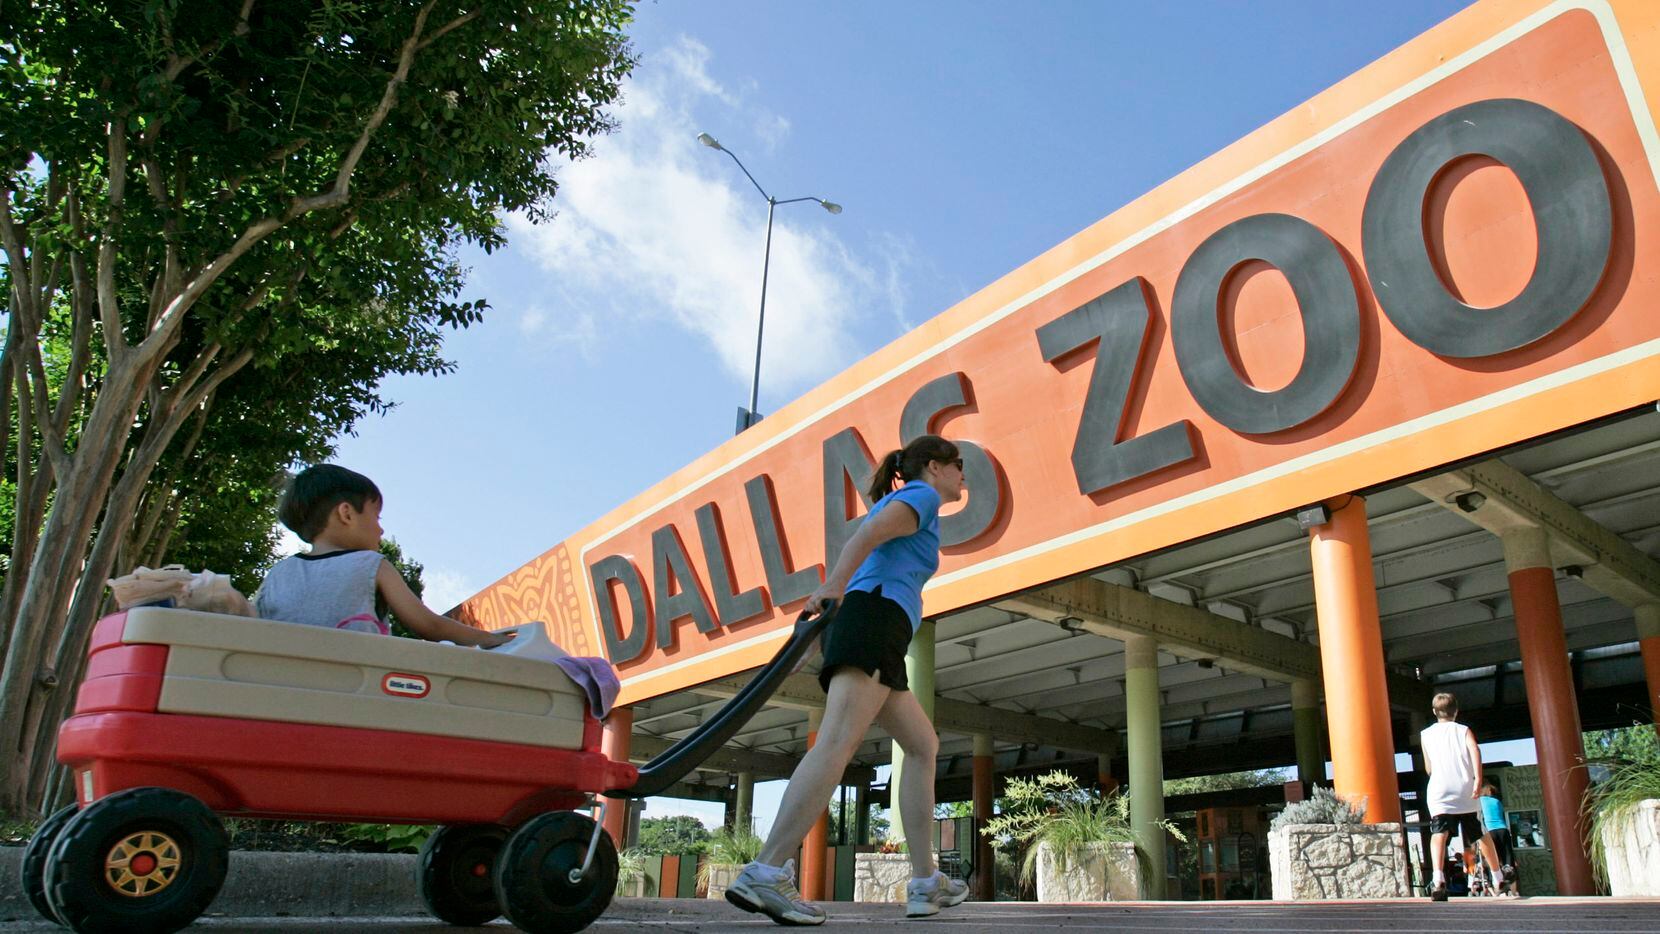 Situaciones fuera de lo común han estado ocurriendo en el Zoológico de Dallas.